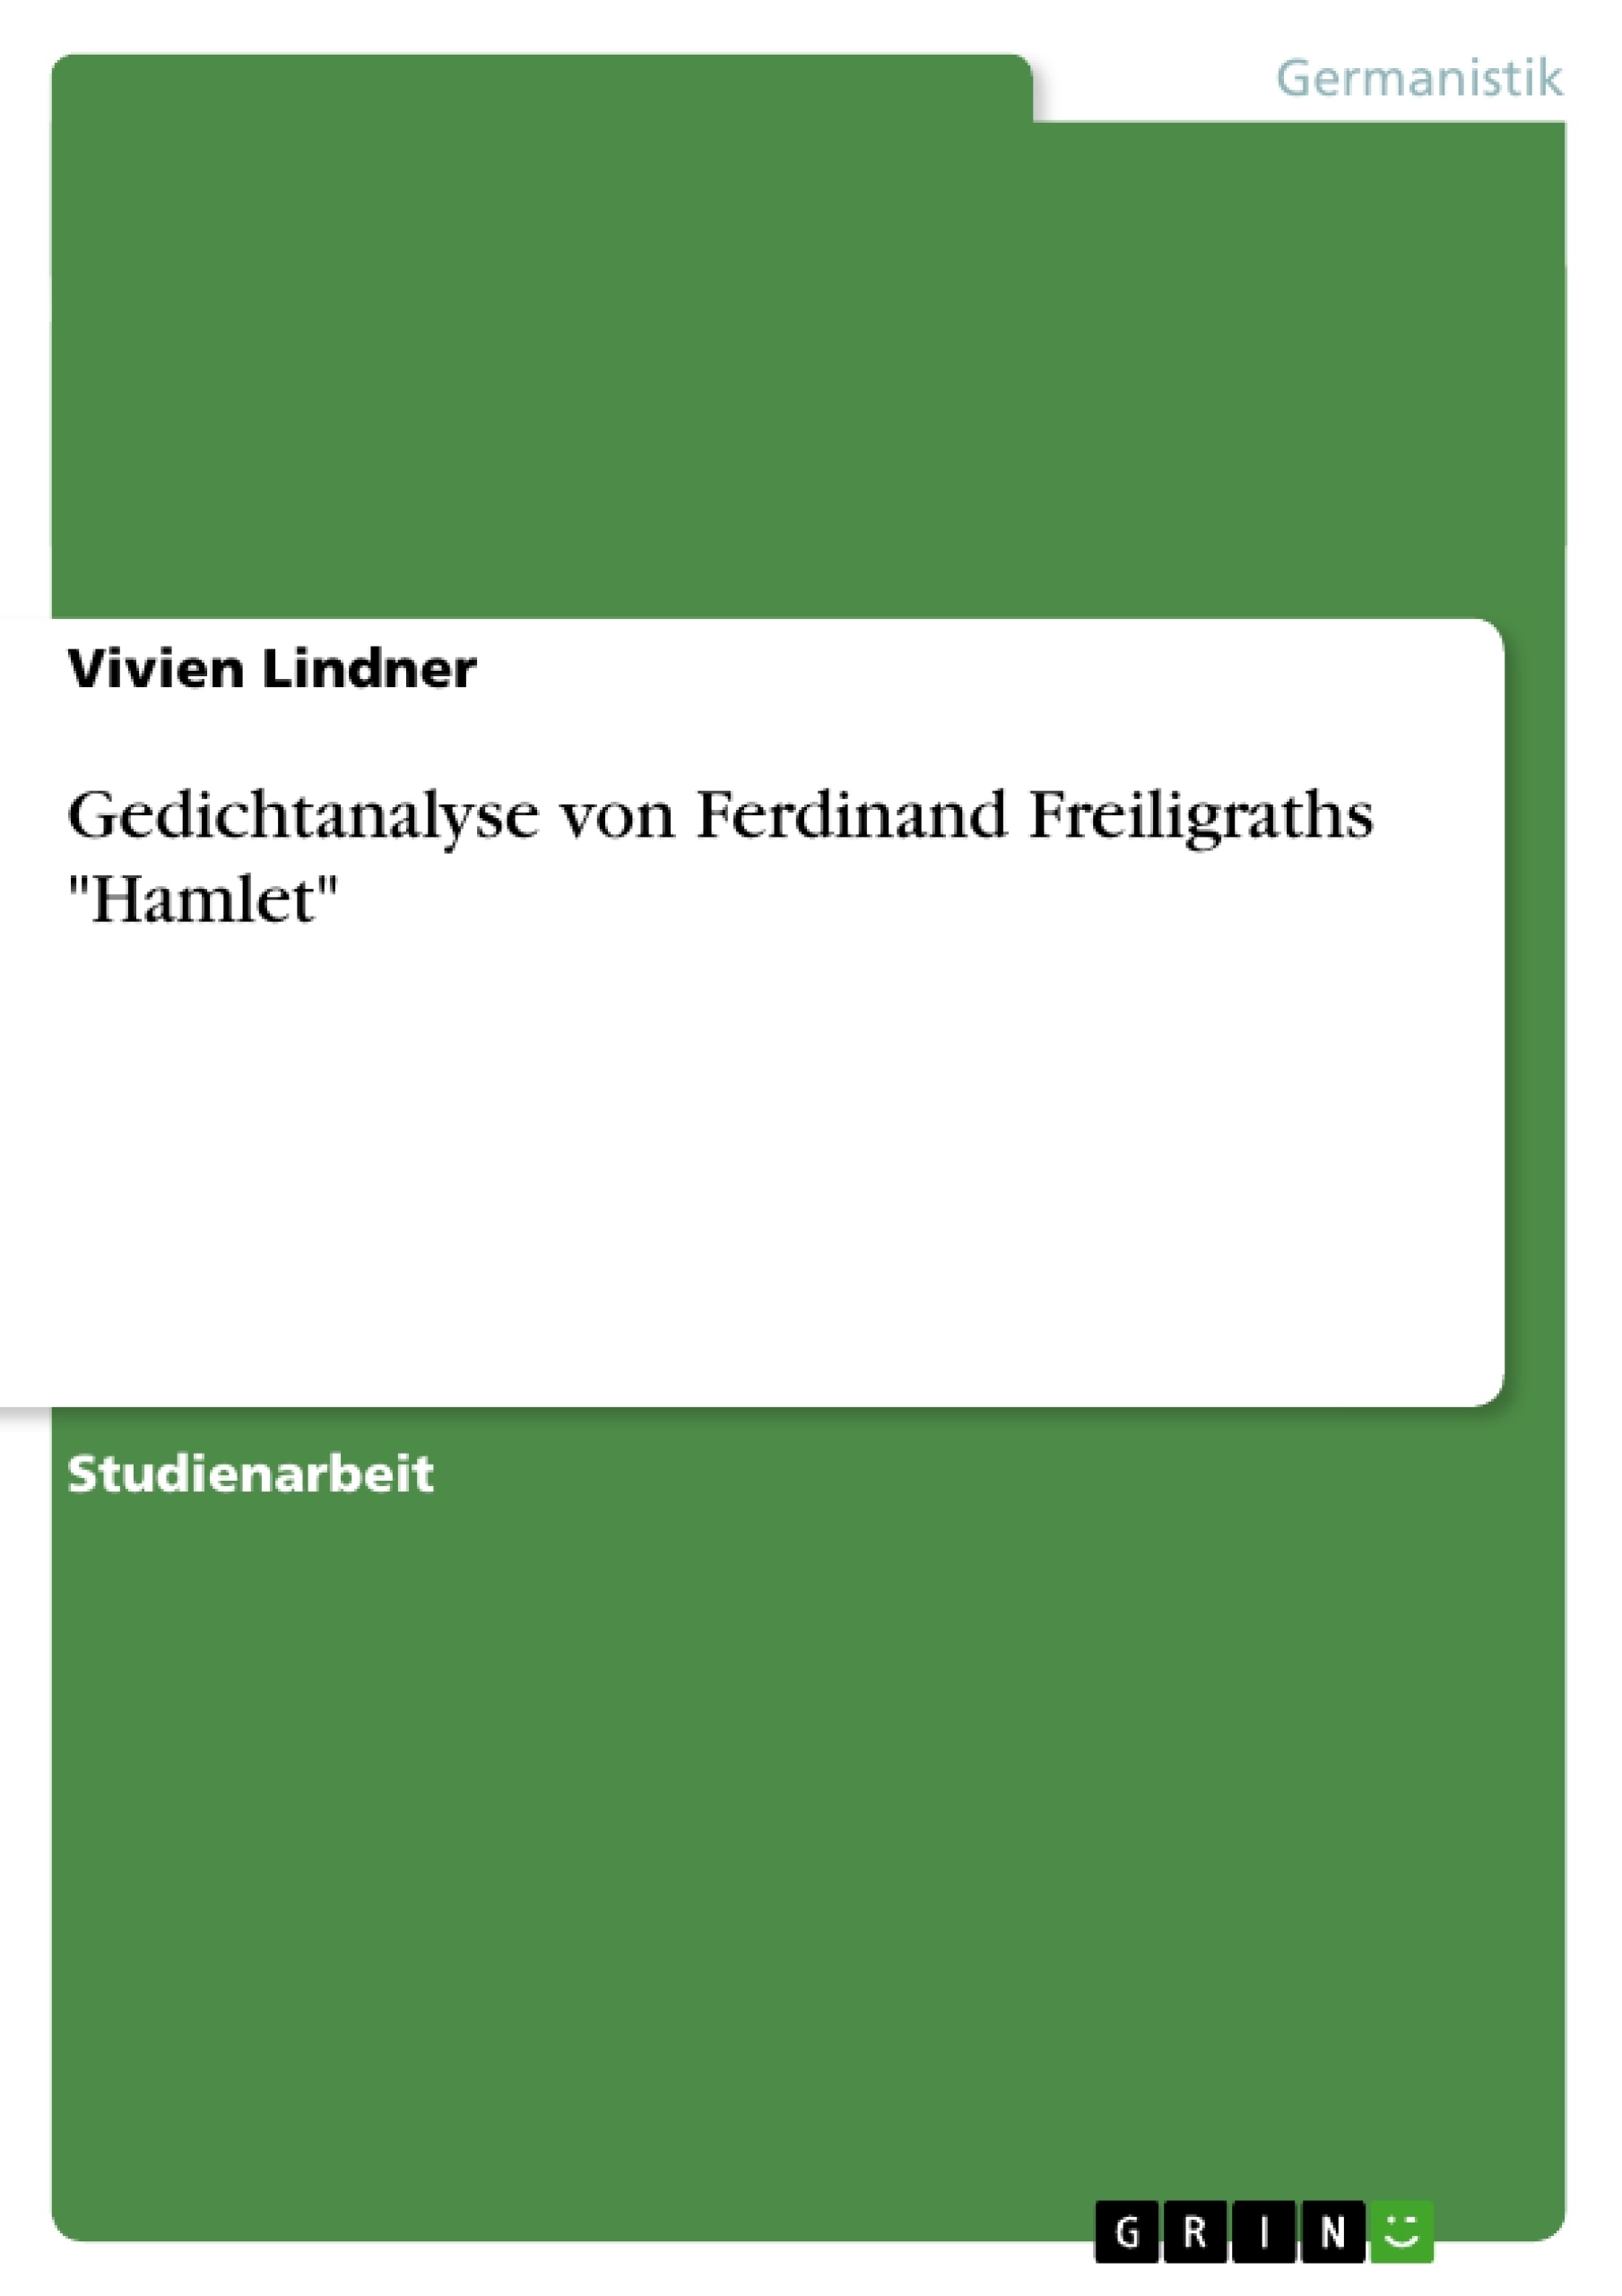 Title: Gedichtanalyse von Ferdinand Freiligraths "Hamlet"